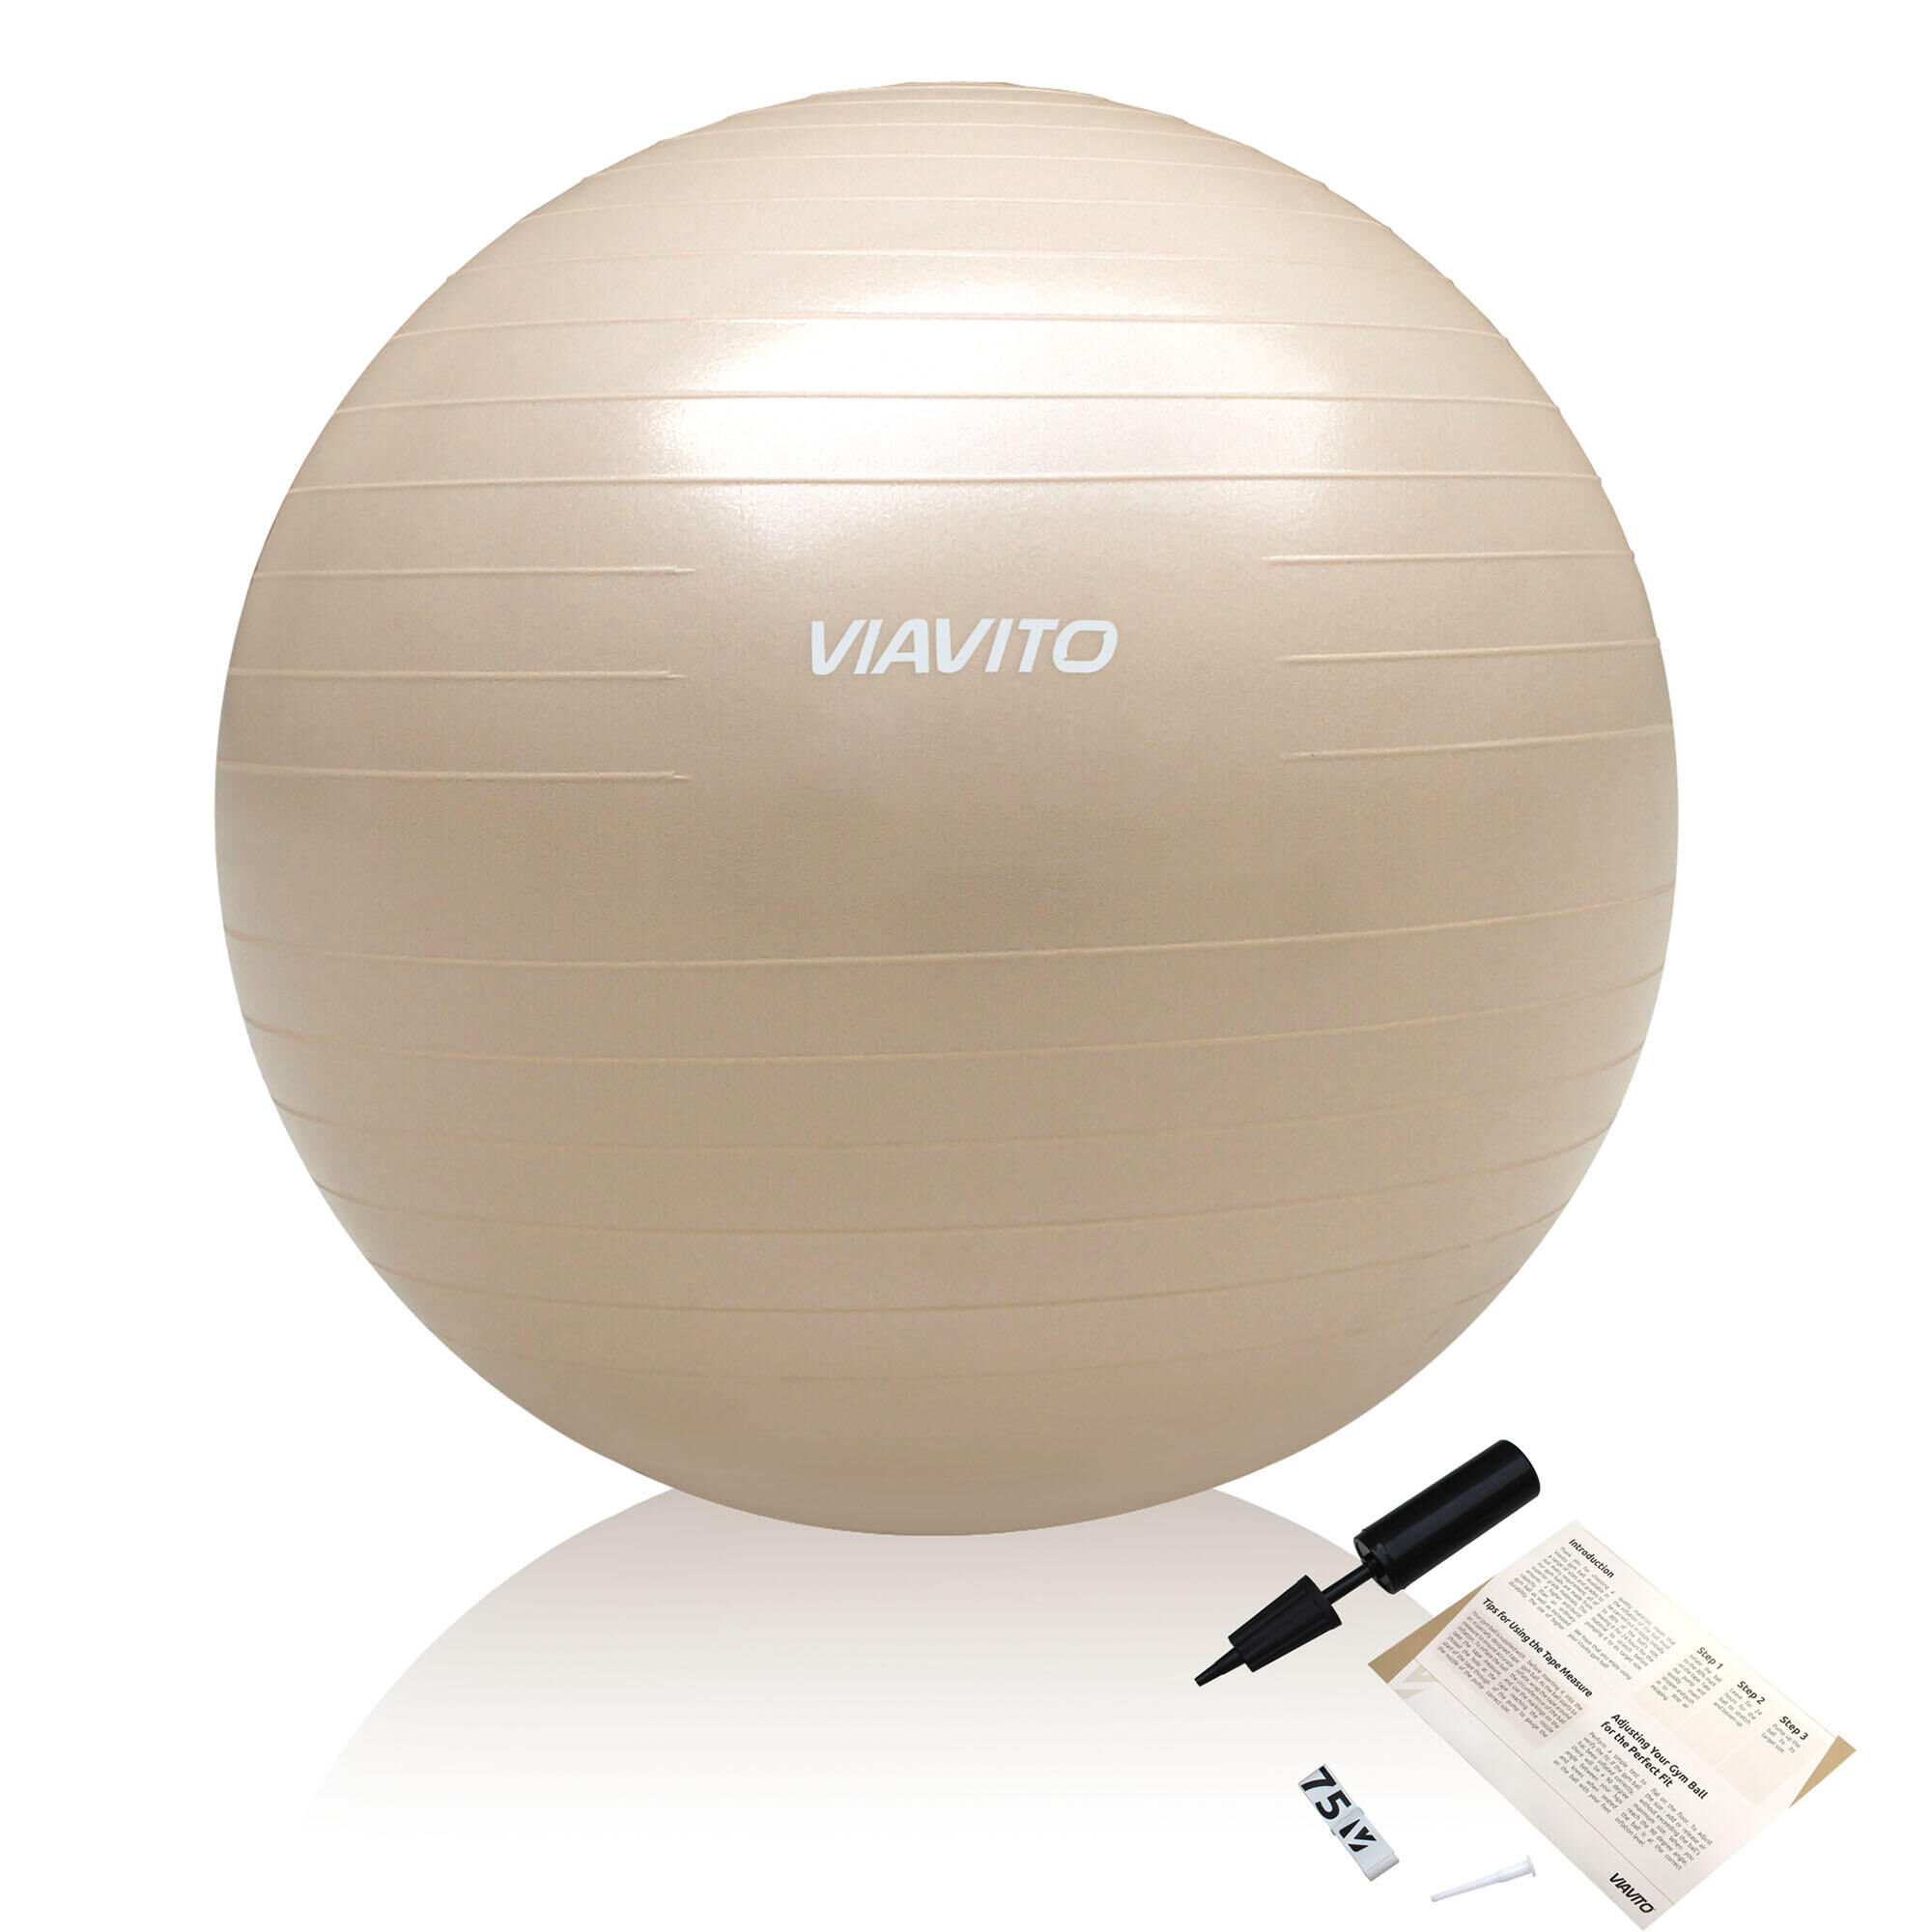 VIAVITO Viavito 75cm Studio Antiburst Gym Ball